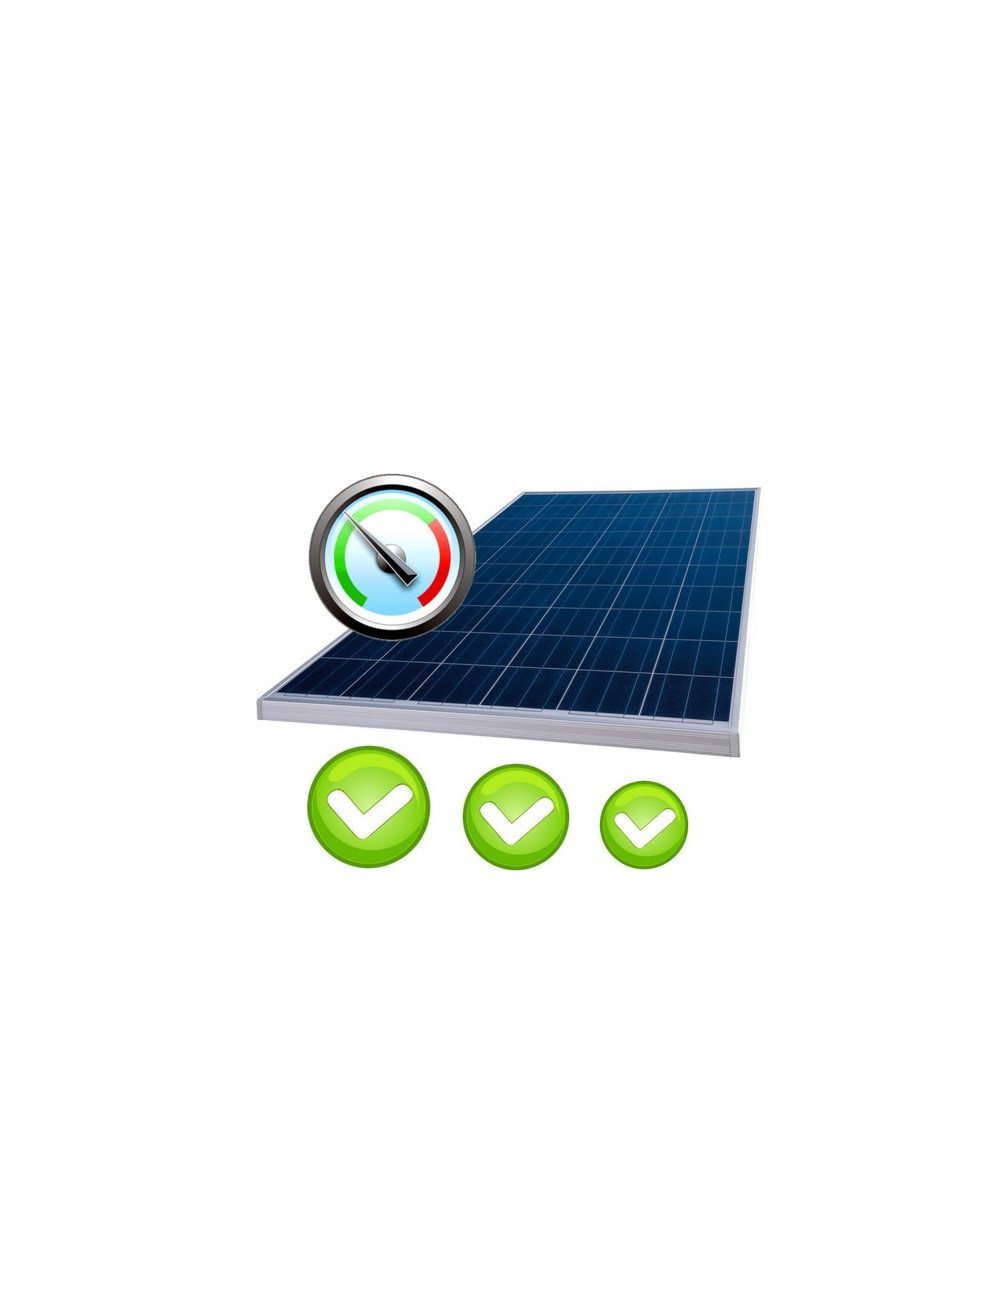 Check-up impianto fotovoltaico. Verifica contabile e amministrativa con analisi della produzione